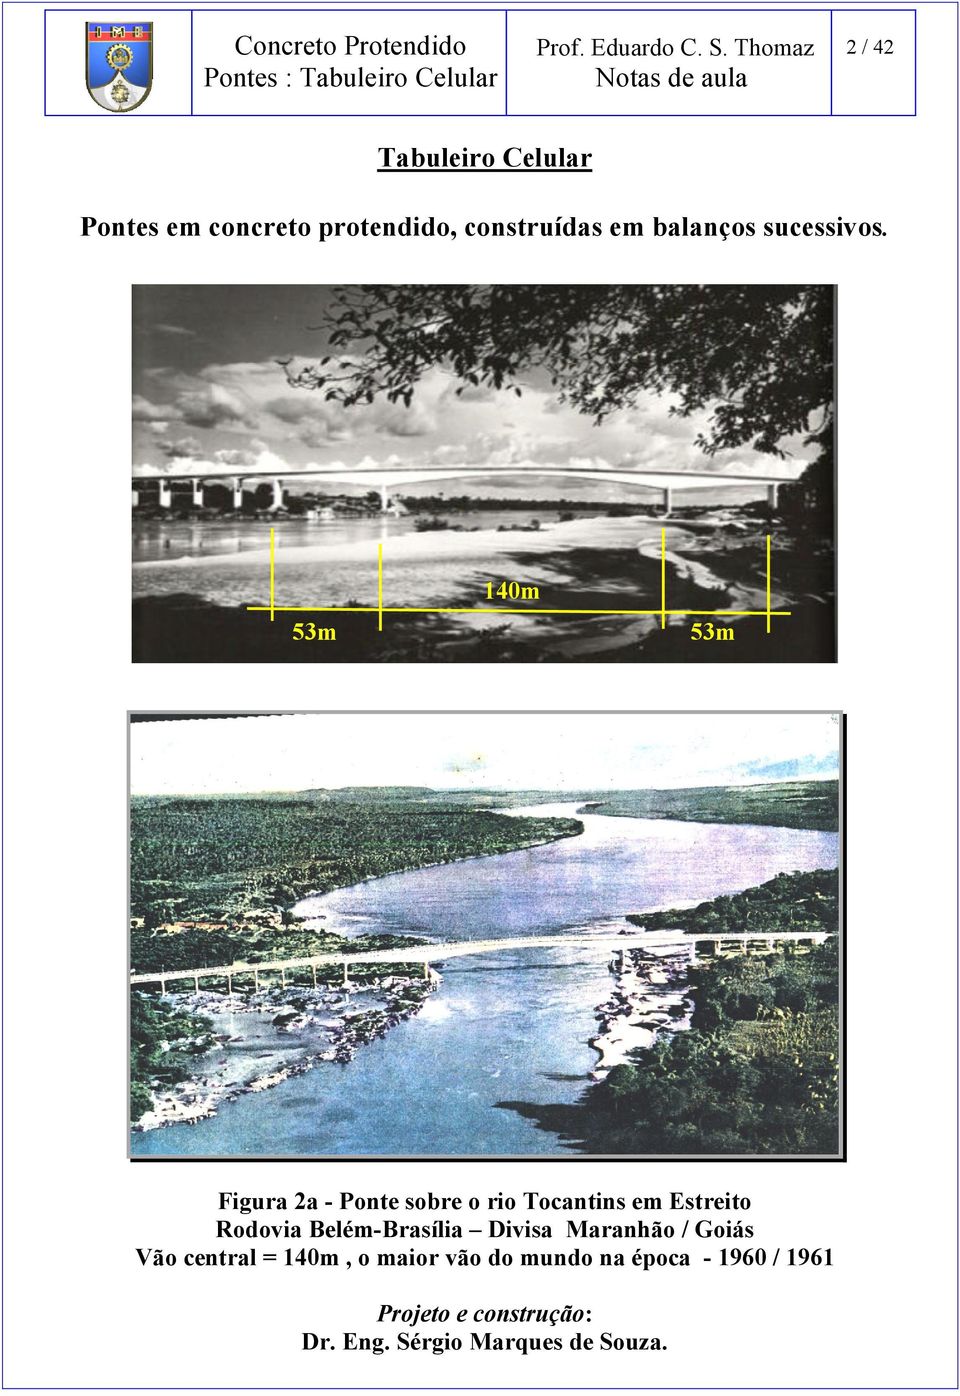 53m 140m 53m Figura 2a - Ponte sobre o rio Tocantins em Estreito Rodovia